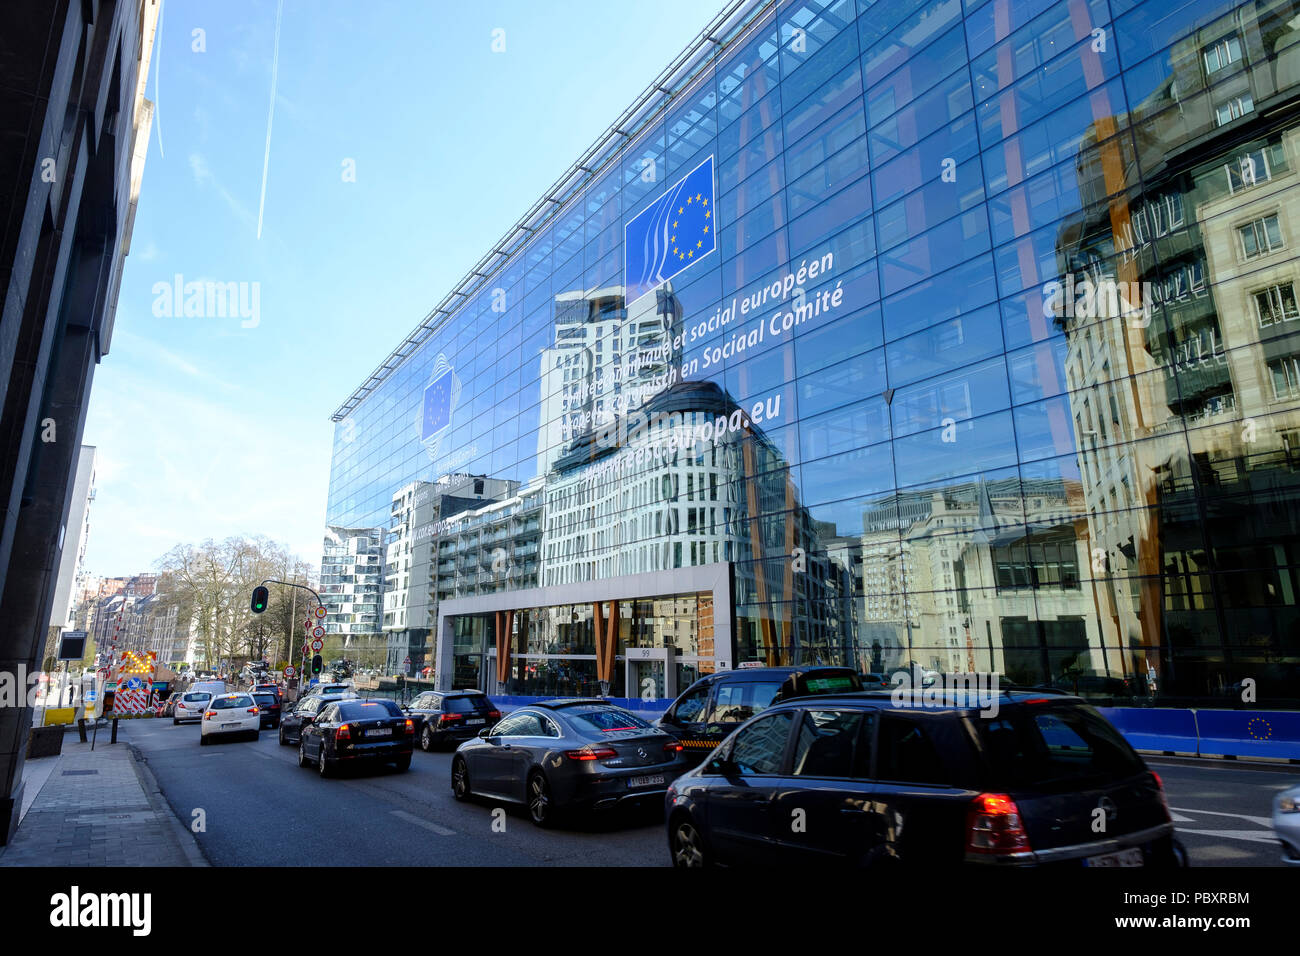 Belgique, Bruxelles : façade en verre du bâtiment Jacques Delors, Comité Économique et Social Européen (CESE), siège social situé au 99 rue Belliard Banque D'Images